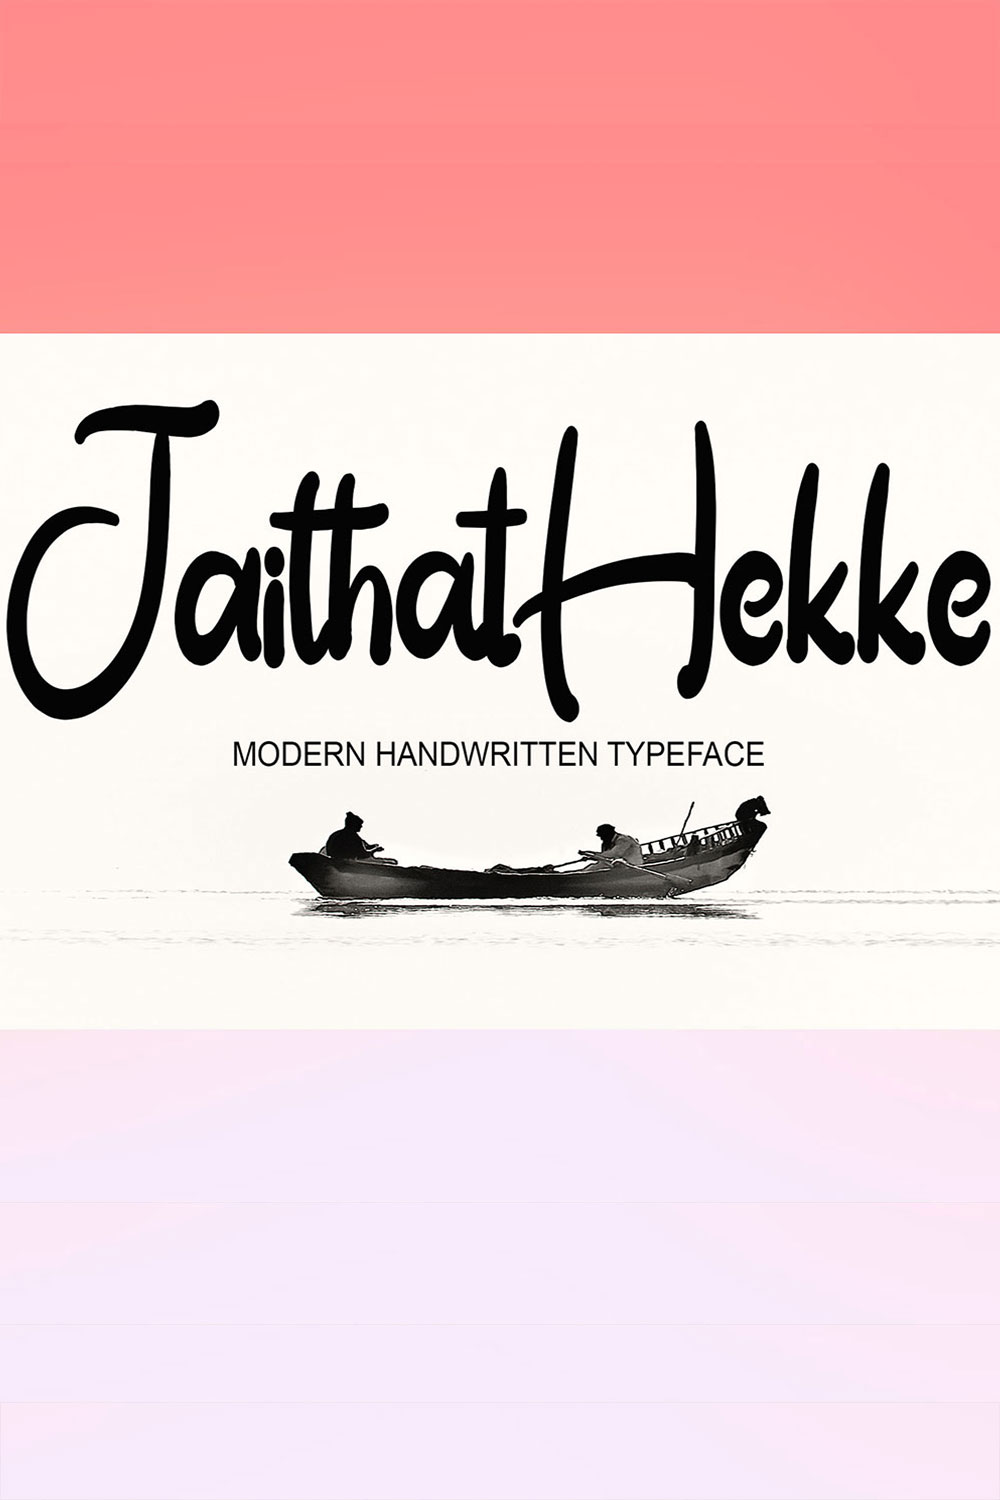 Jaithat Hekke Handwritten Font Pinterest image.